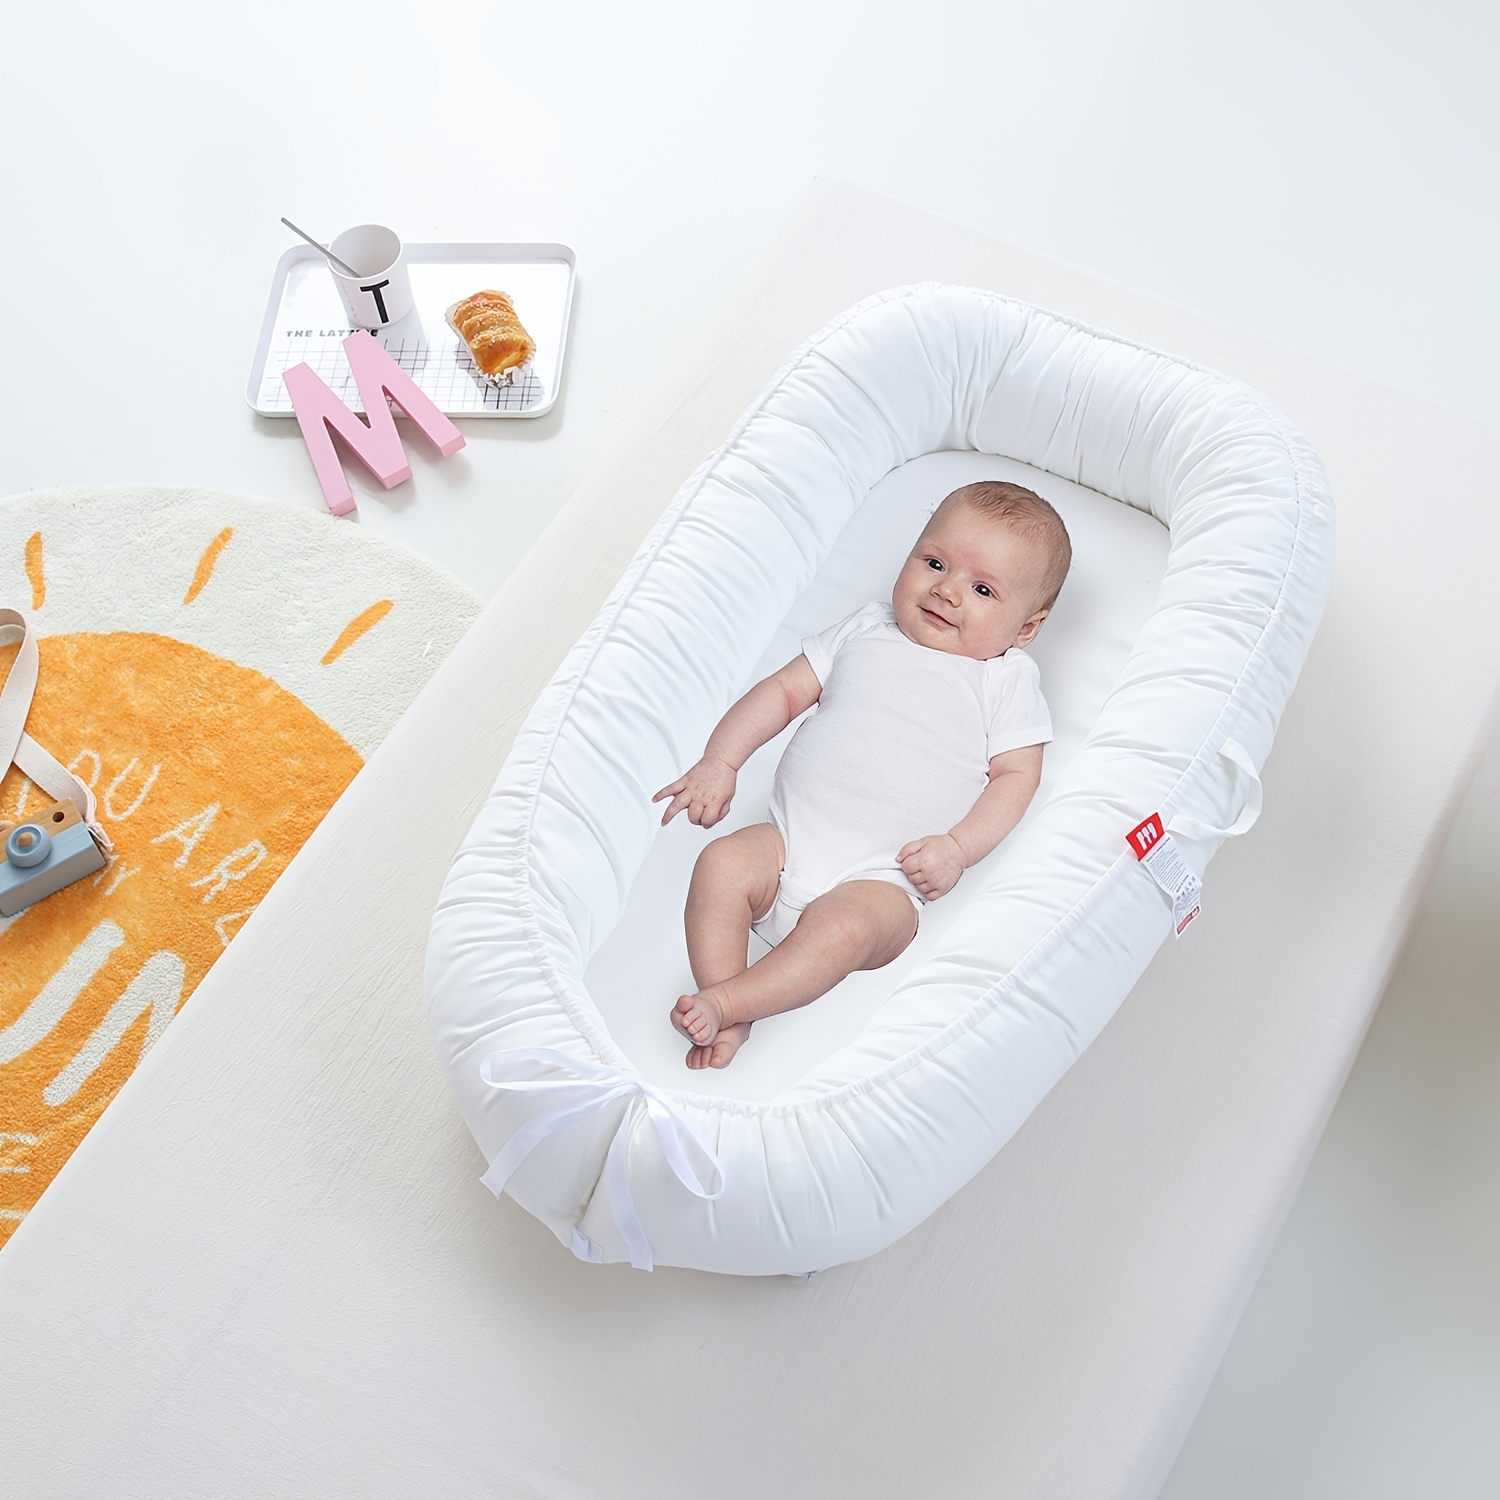 Espreguiçadeira Baby Nest Soft Baby Nest Lounger ajustável respirável  espreguiçadeira para recém-nascido co-dormindo espreguiçadeira  recém-nascido bebê aconchego ninho dorminhoco